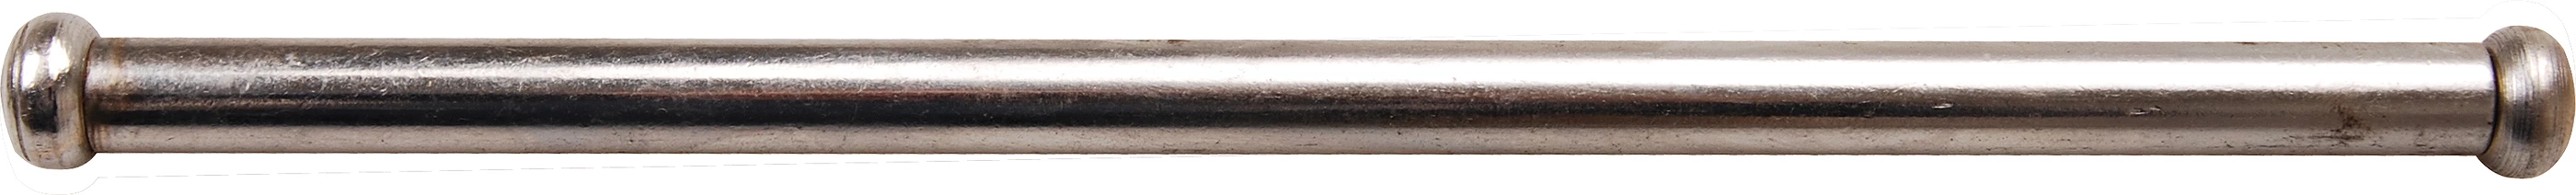 Stahlknebel für Schraubstöcke - 8 x 200 mm